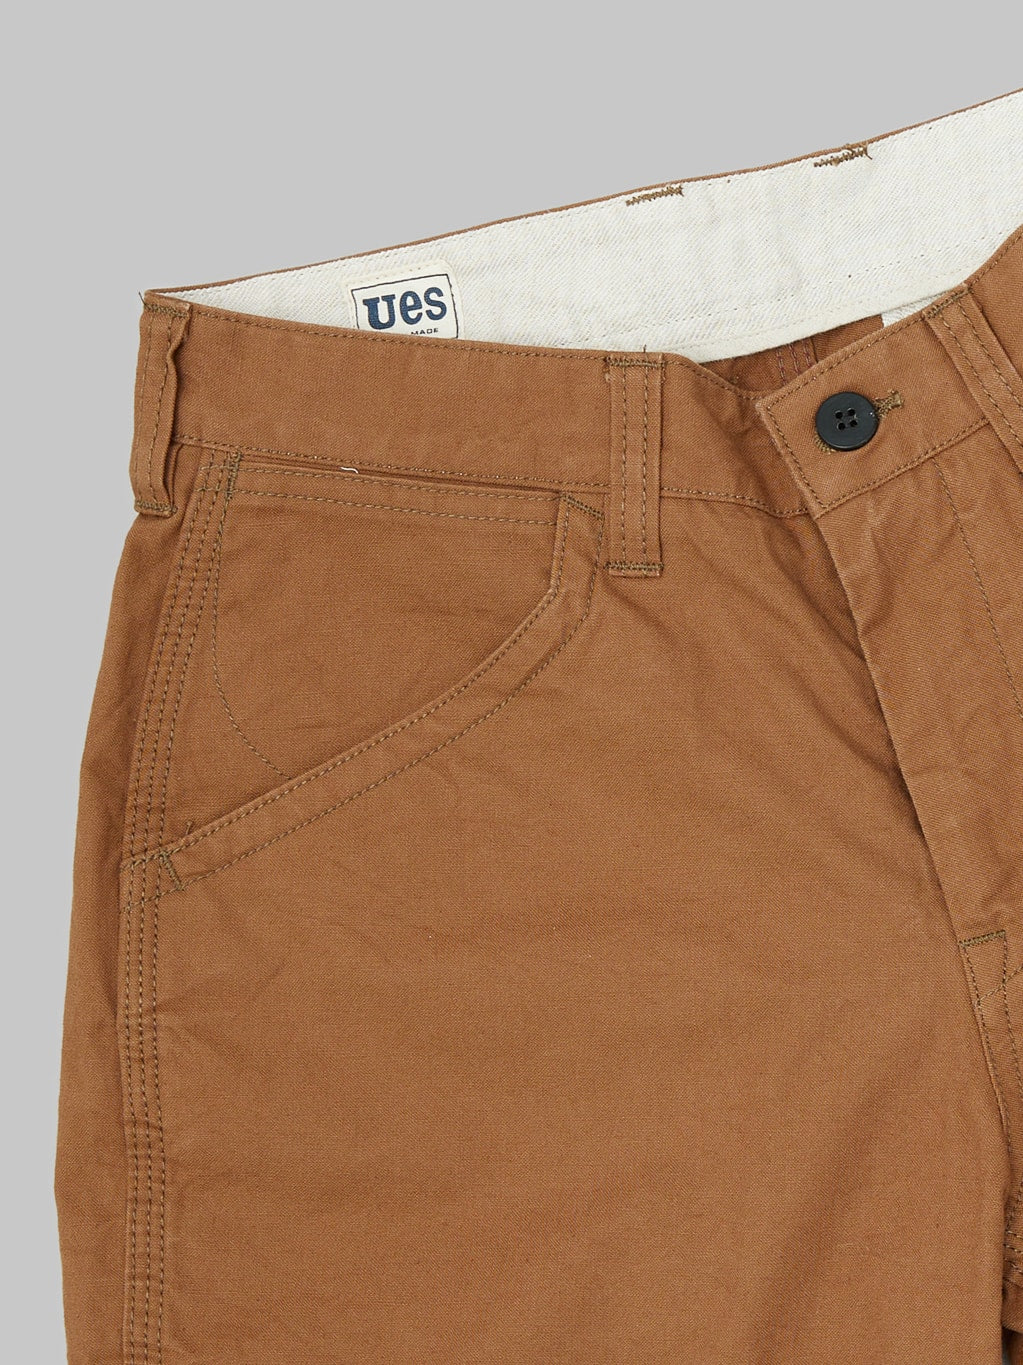 UES Duck Canvas Short Pants Brown pocket details